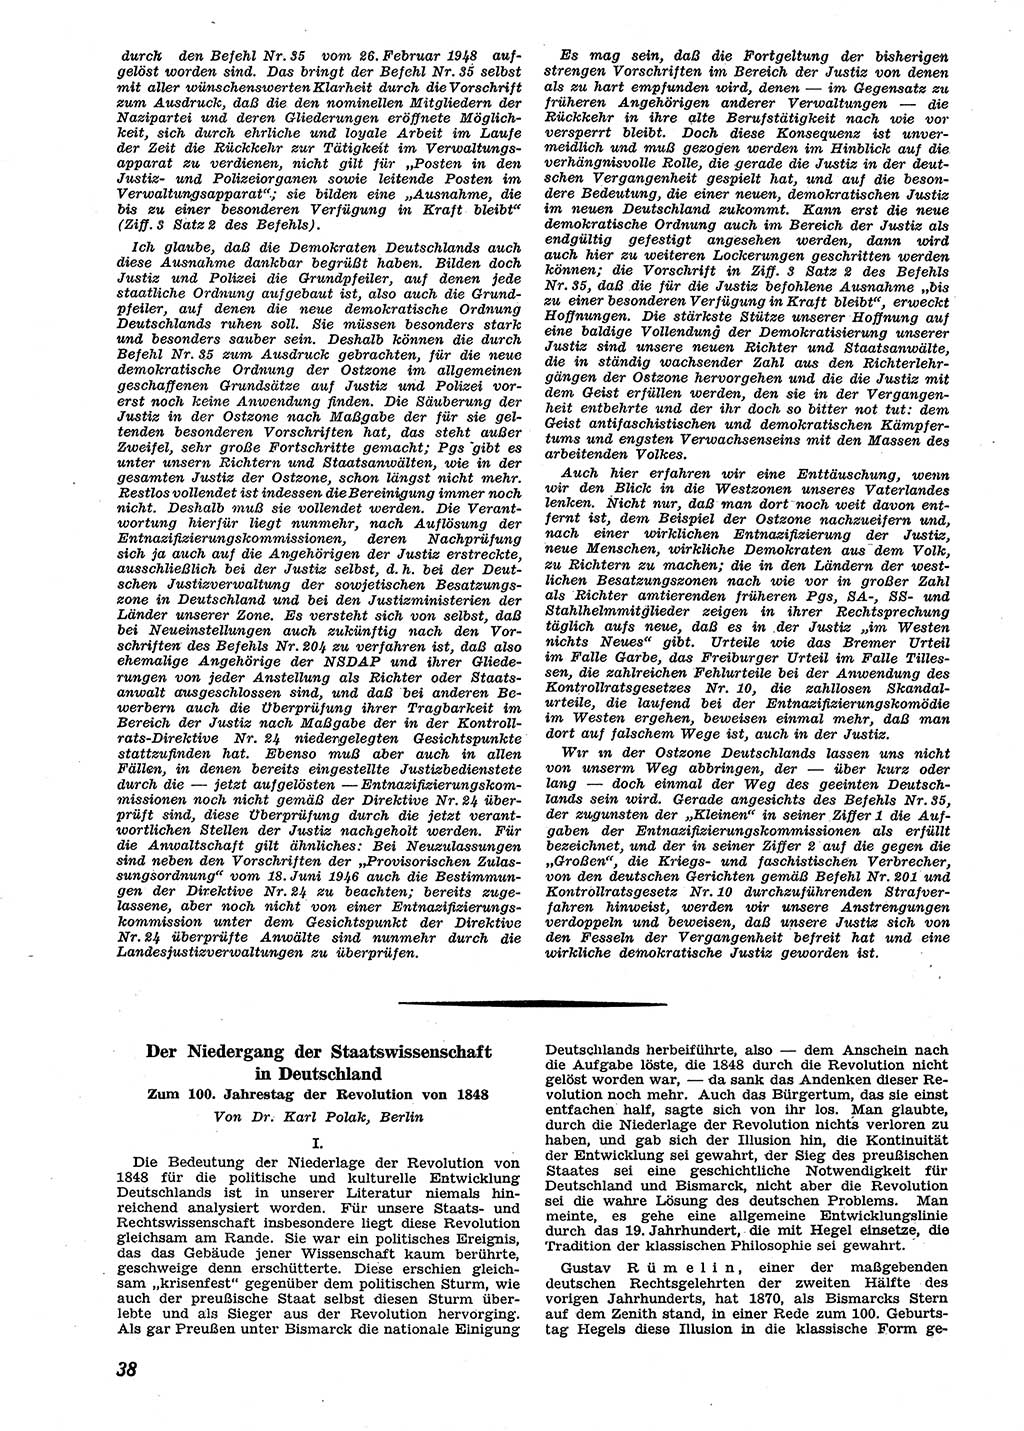 Neue Justiz (NJ), Zeitschrift für Recht und Rechtswissenschaft [Sowjetische Besatzungszone (SBZ) Deutschland], 2. Jahrgang 1948, Seite 38 (NJ SBZ Dtl. 1948, S. 38)